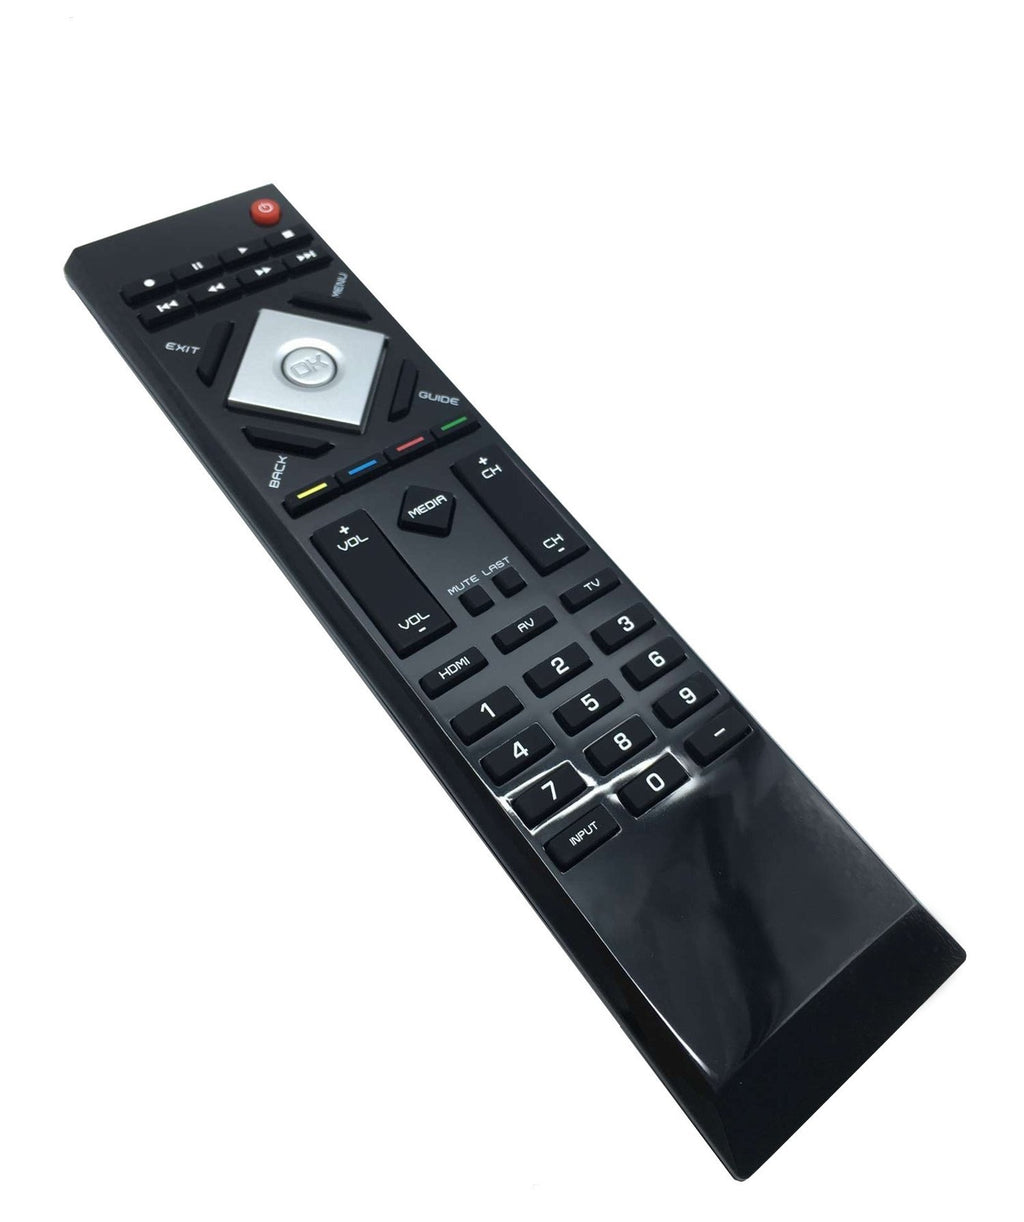 New VR15 TV Remote for Vizio TV E320VL E320VL E420VL E370VL E420VO E320VL-MX E320VP E421VL E371VL E321VL E421VO E470VLE (0980-0306-0320)